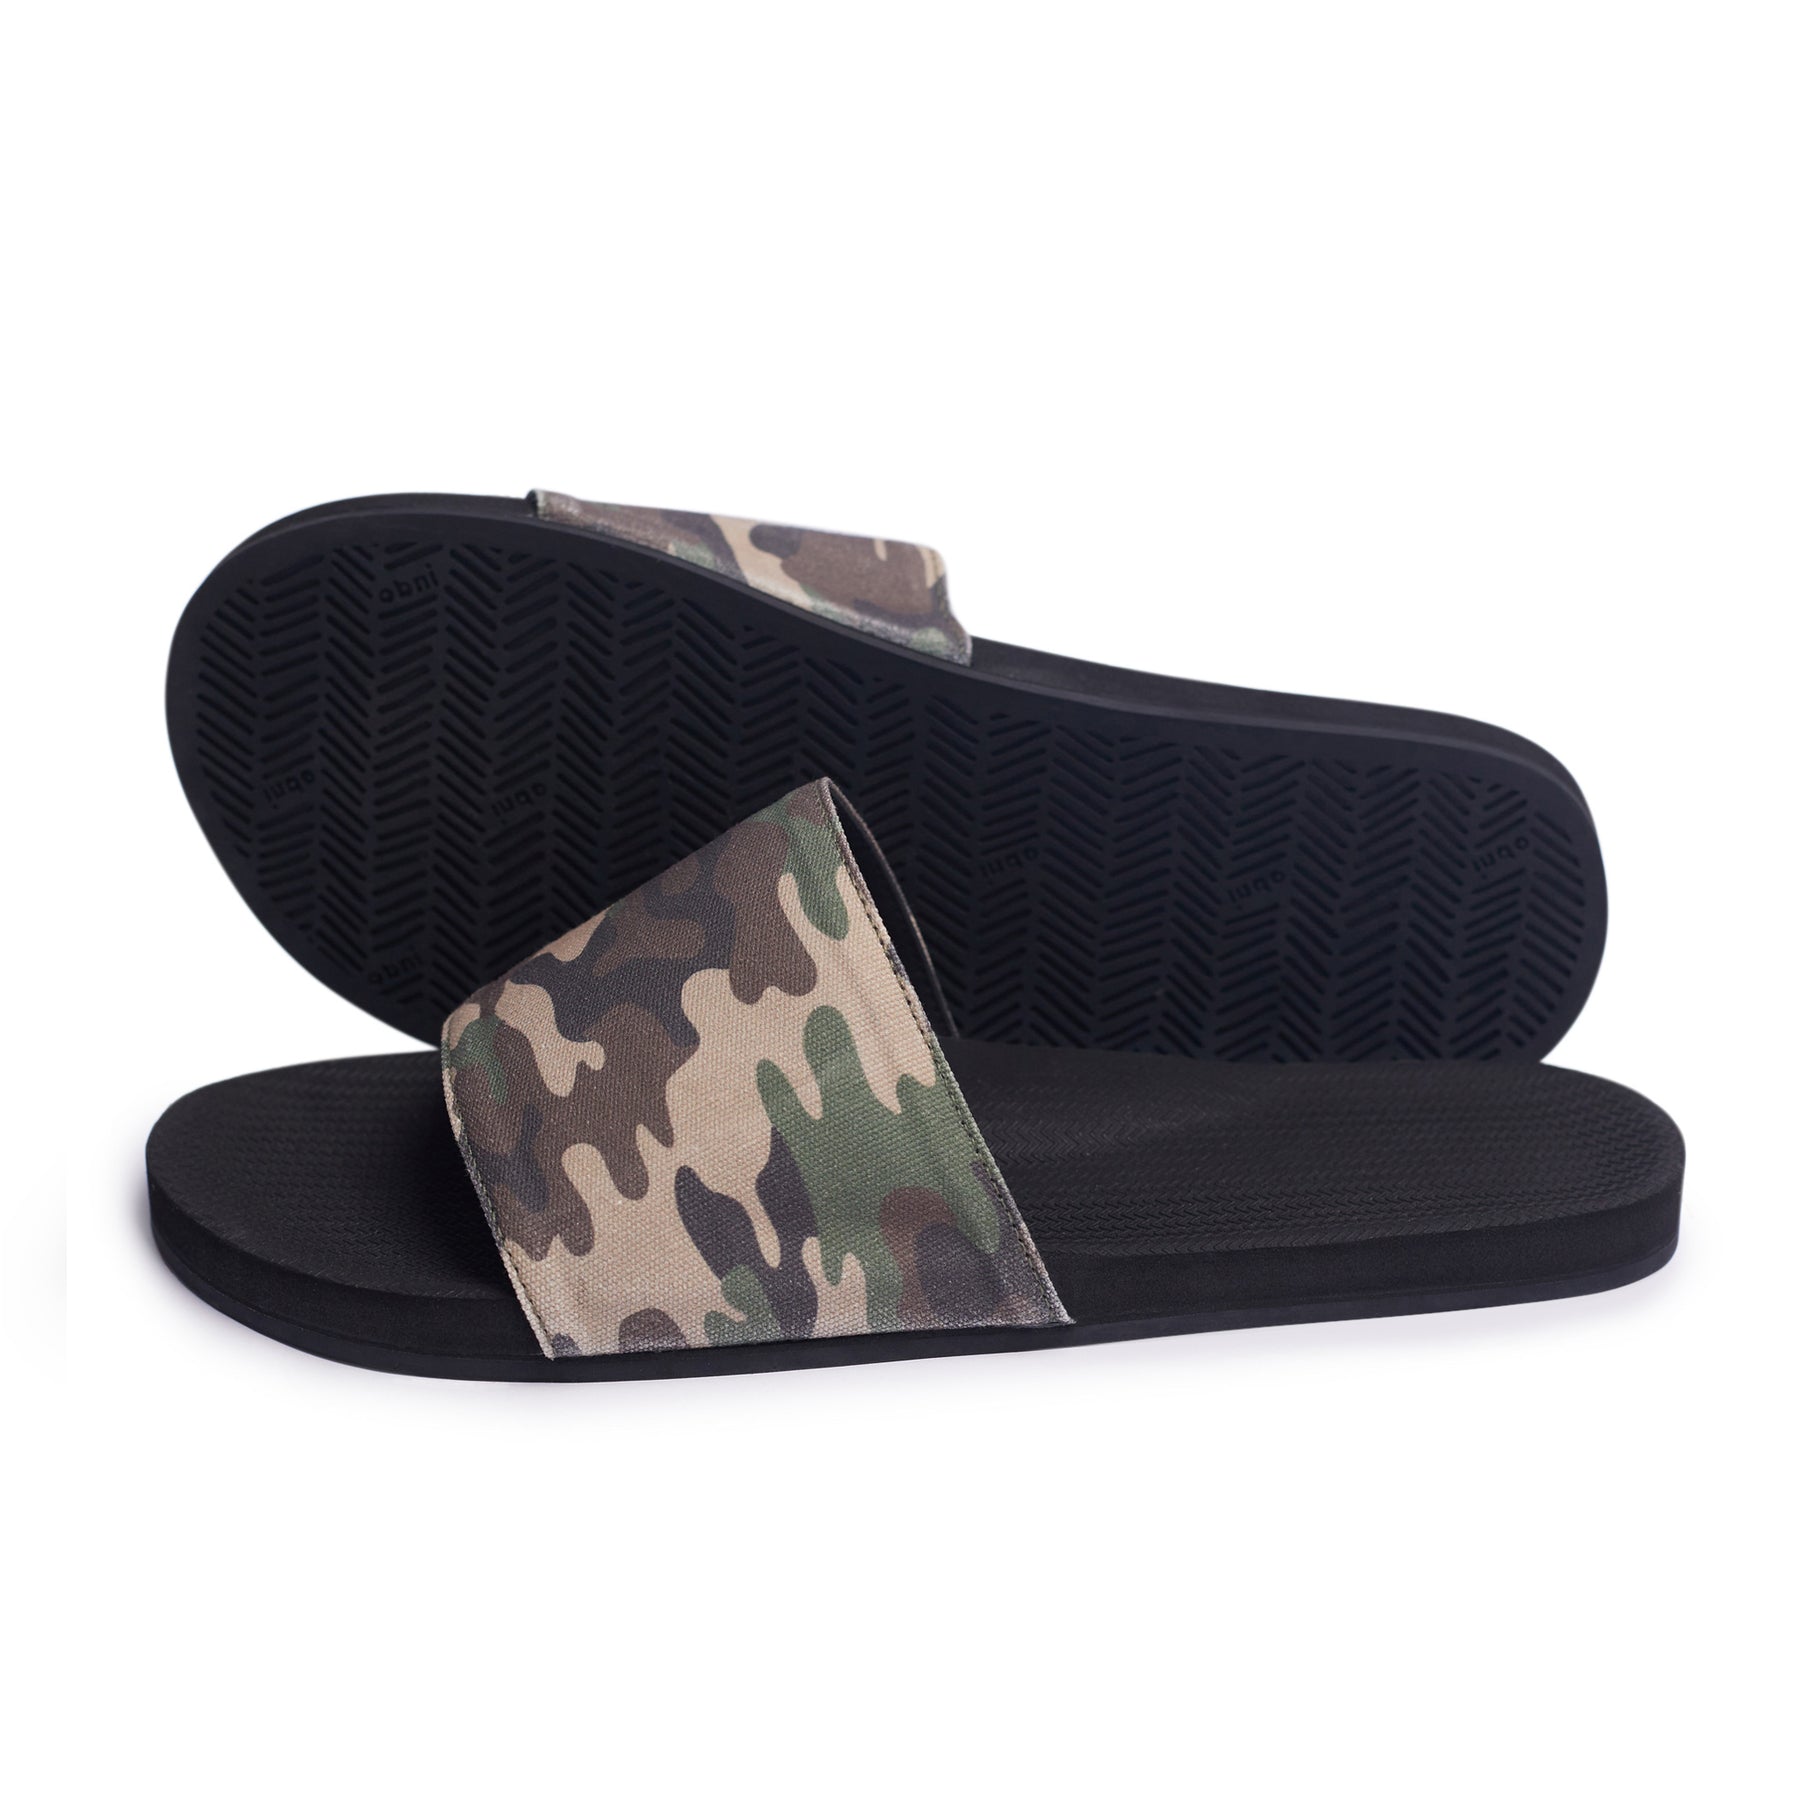 Women's Slides Camo - Black/Camo Regular